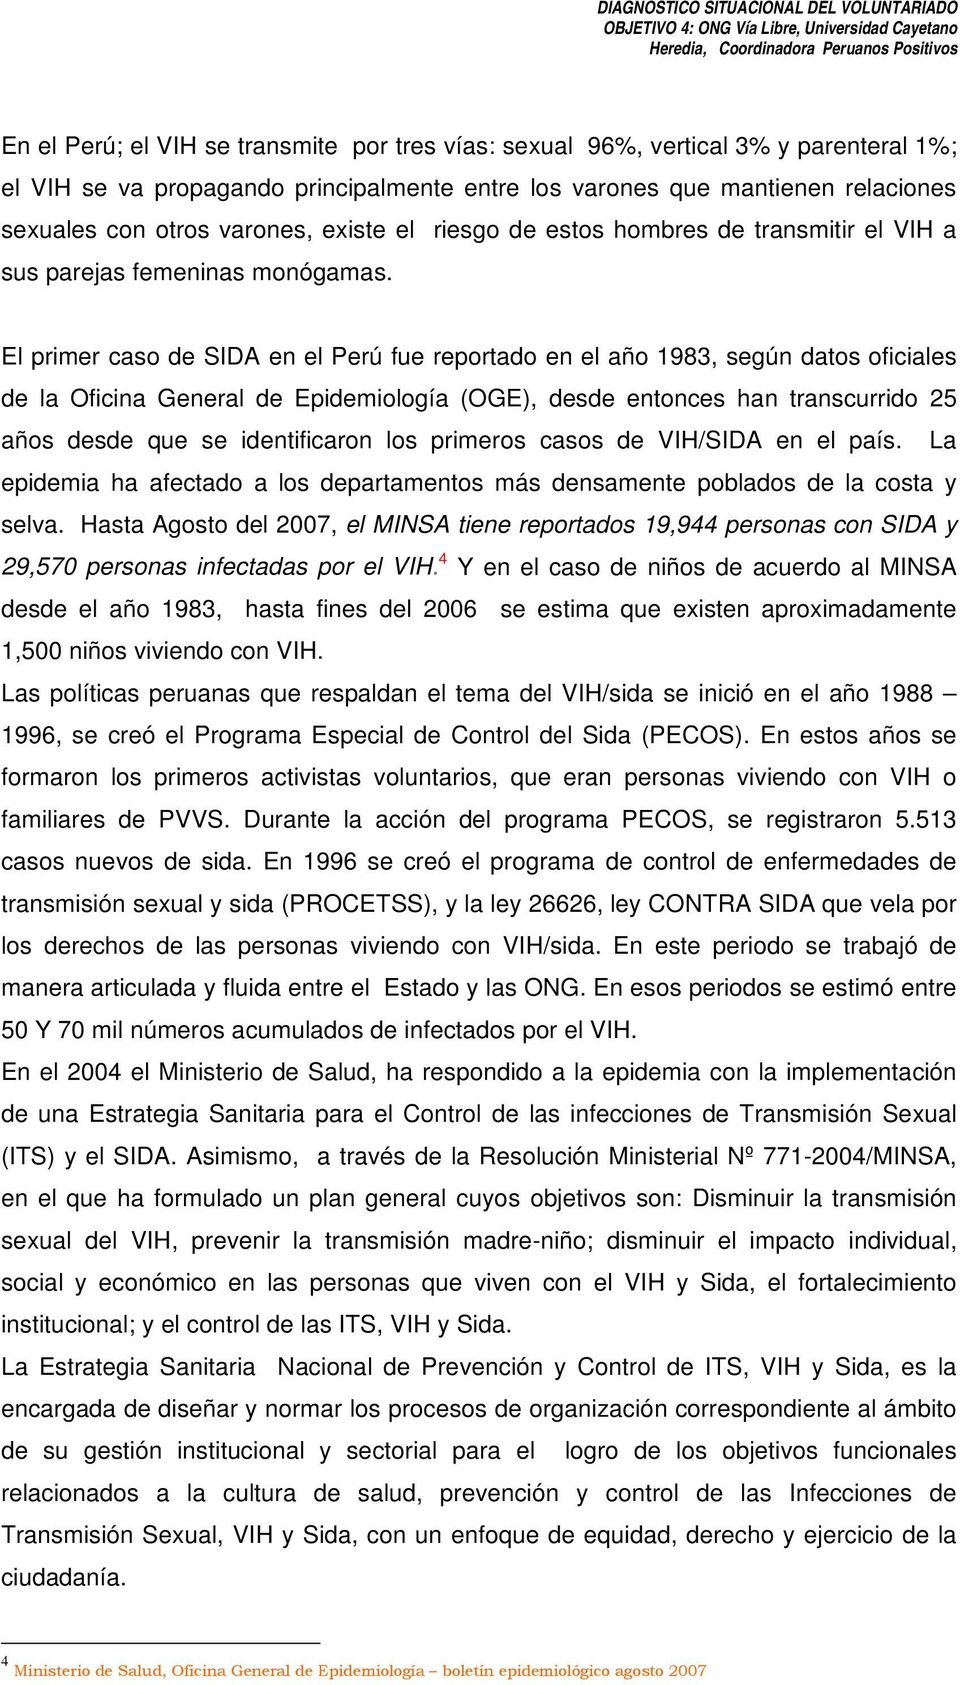 El primer caso de SIDA en el Perú fue reportado en el año 1983, según datos oficiales de la Oficina General de Epidemiología (OGE), desde entonces han transcurrido 25 años desde que se identificaron